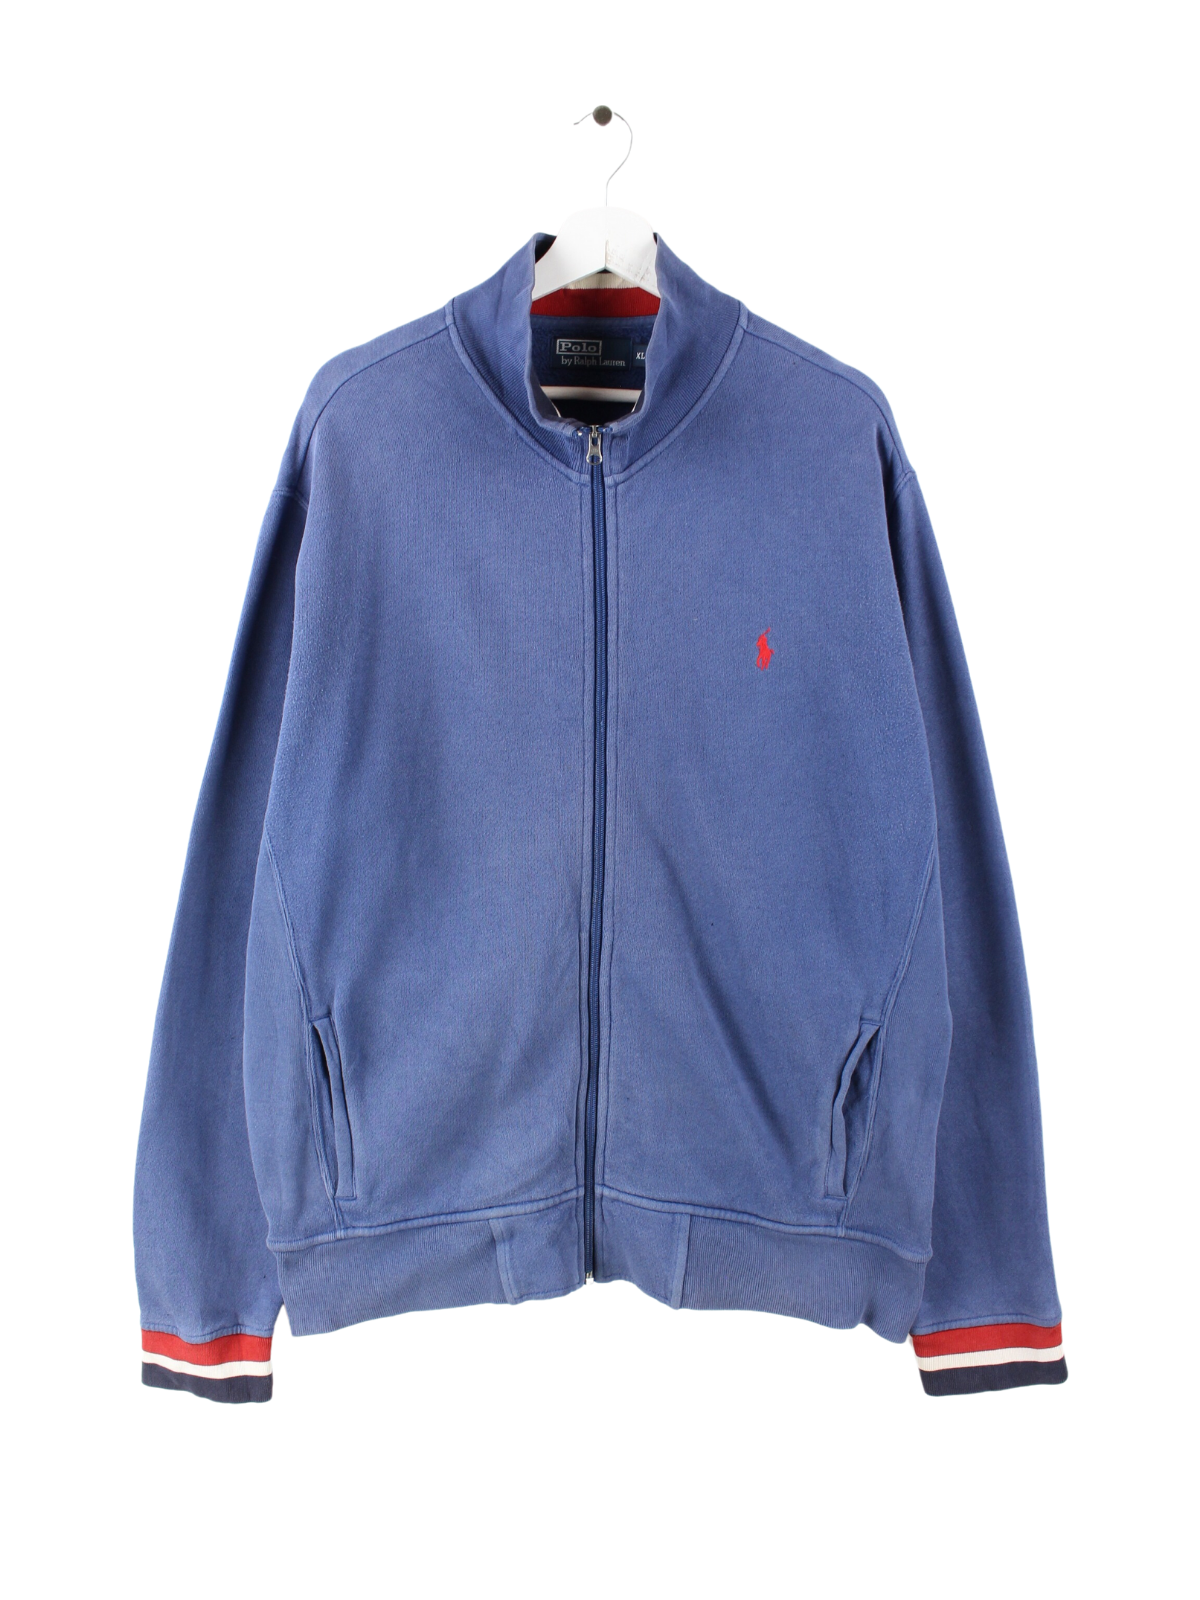 Ralph Lauren sweat jacket blue XL